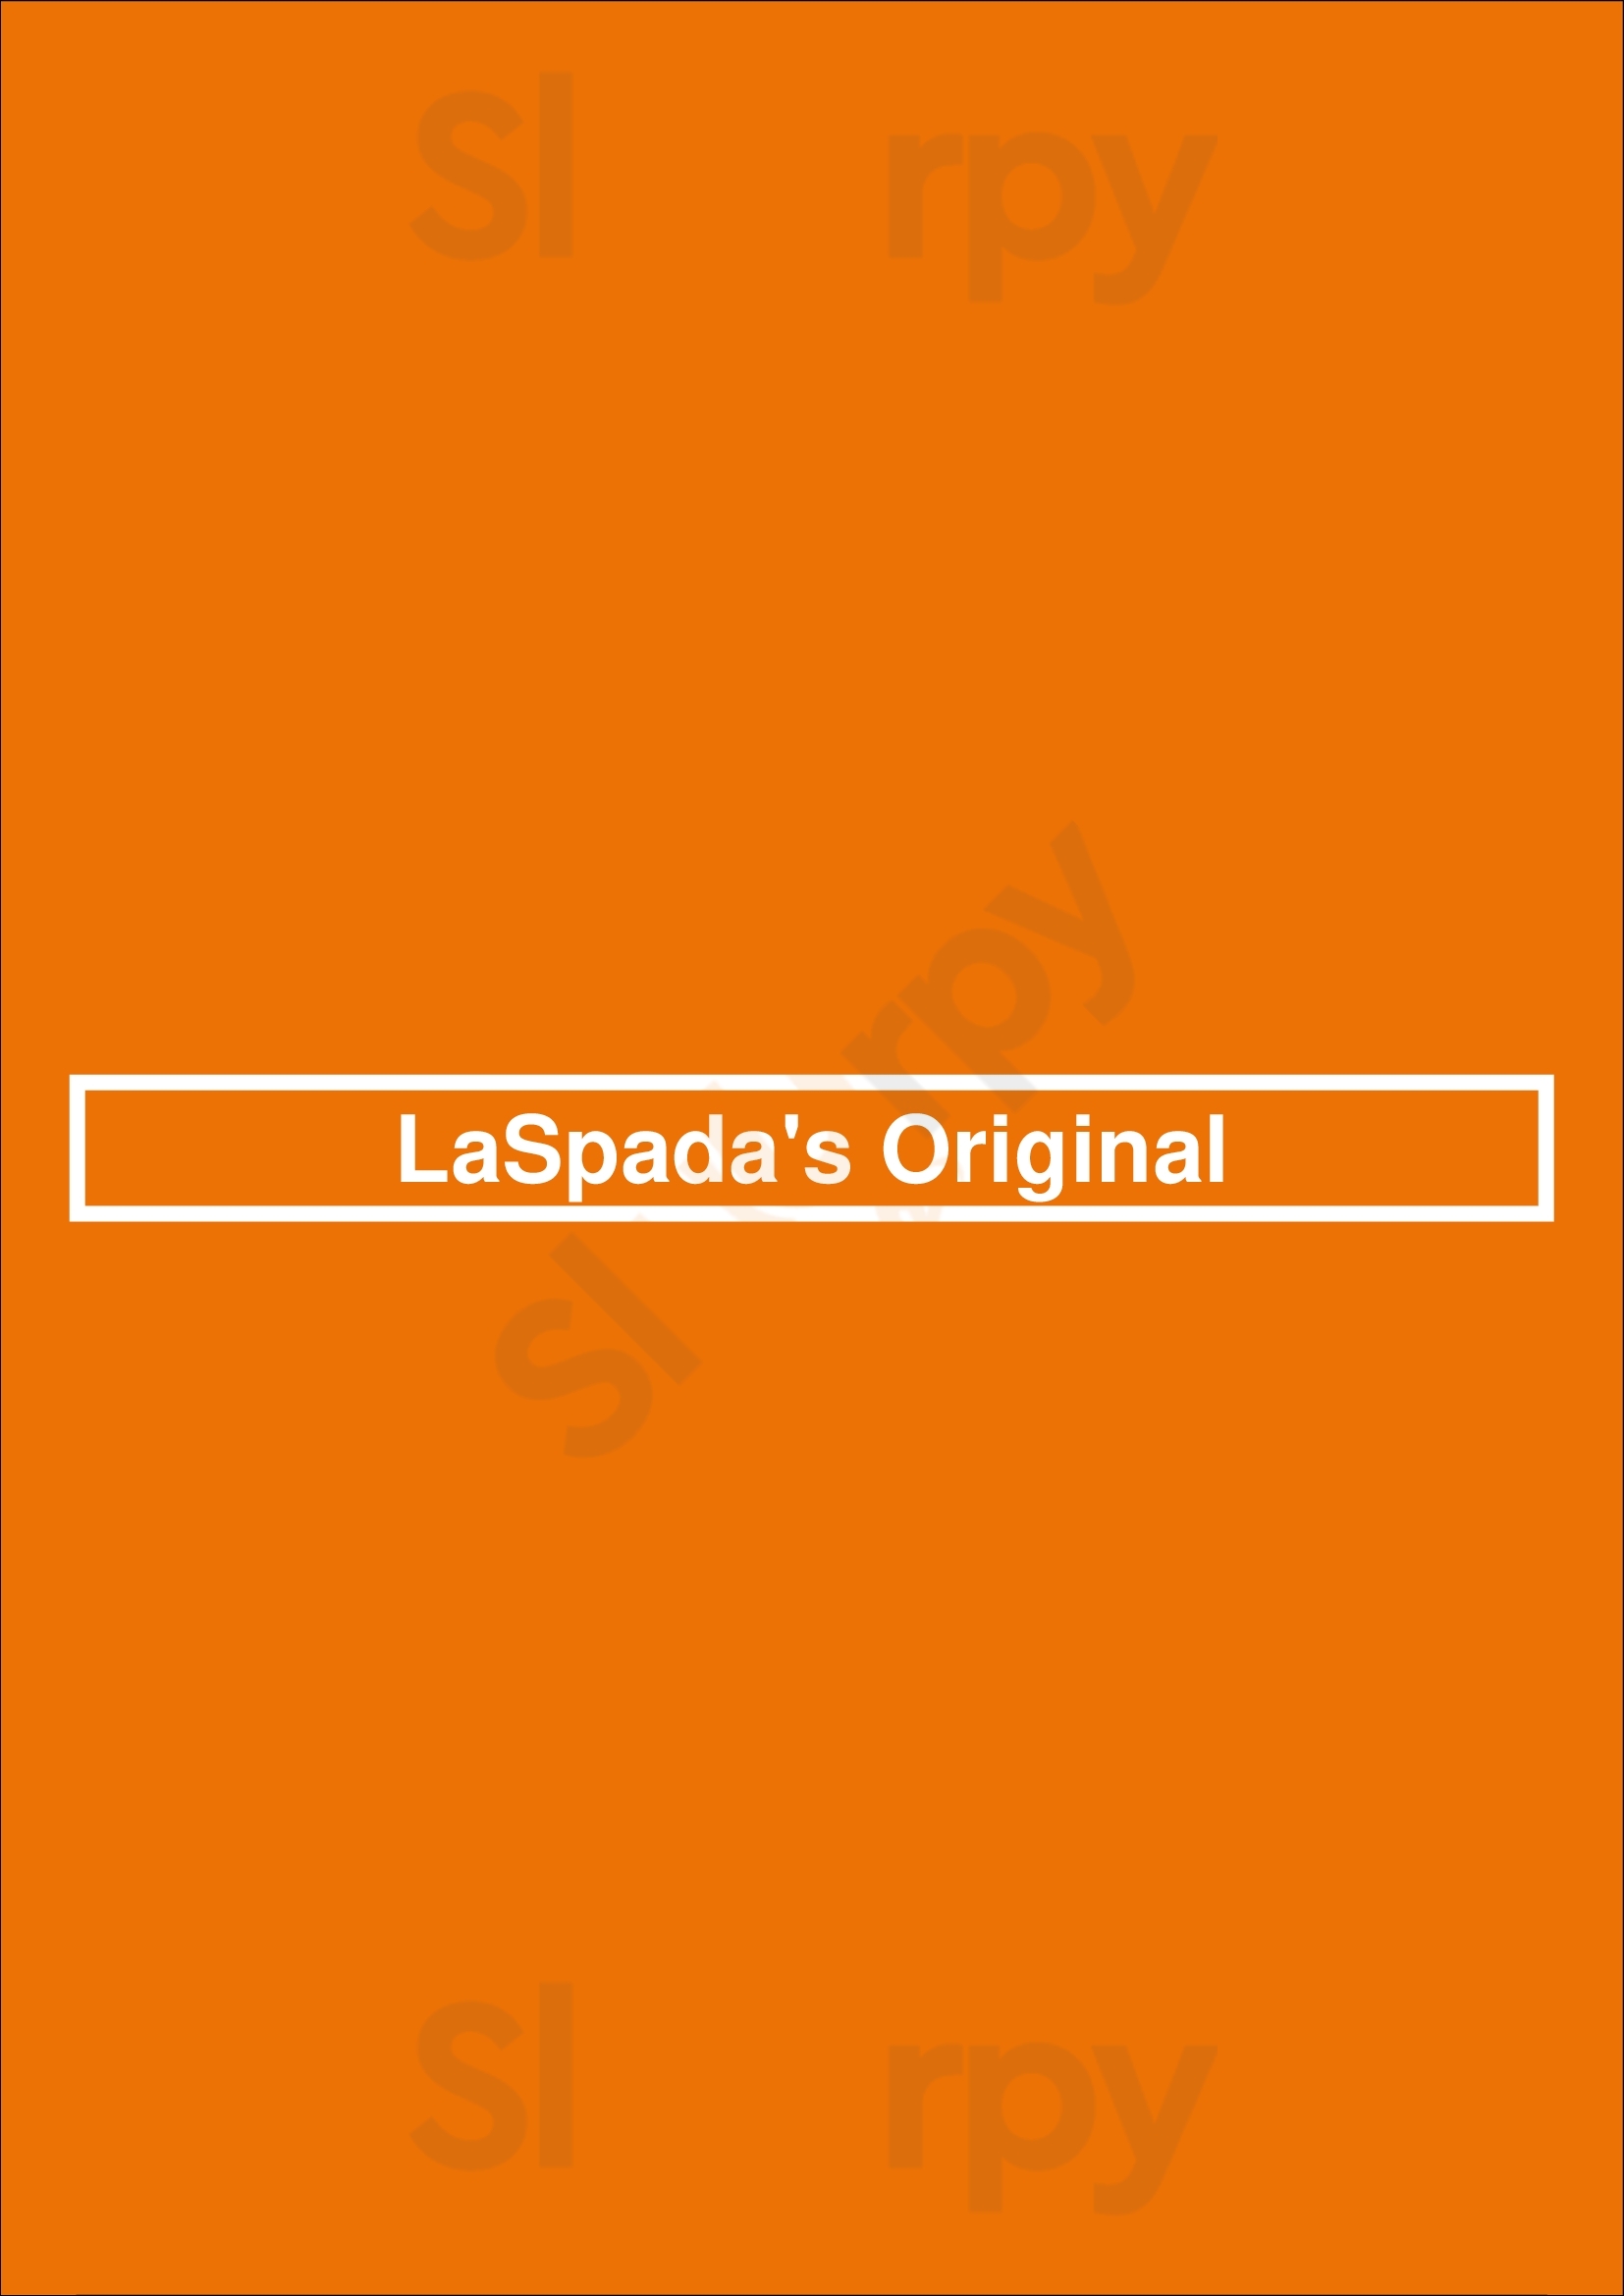 Laspada's Original Orlando Menu - 1